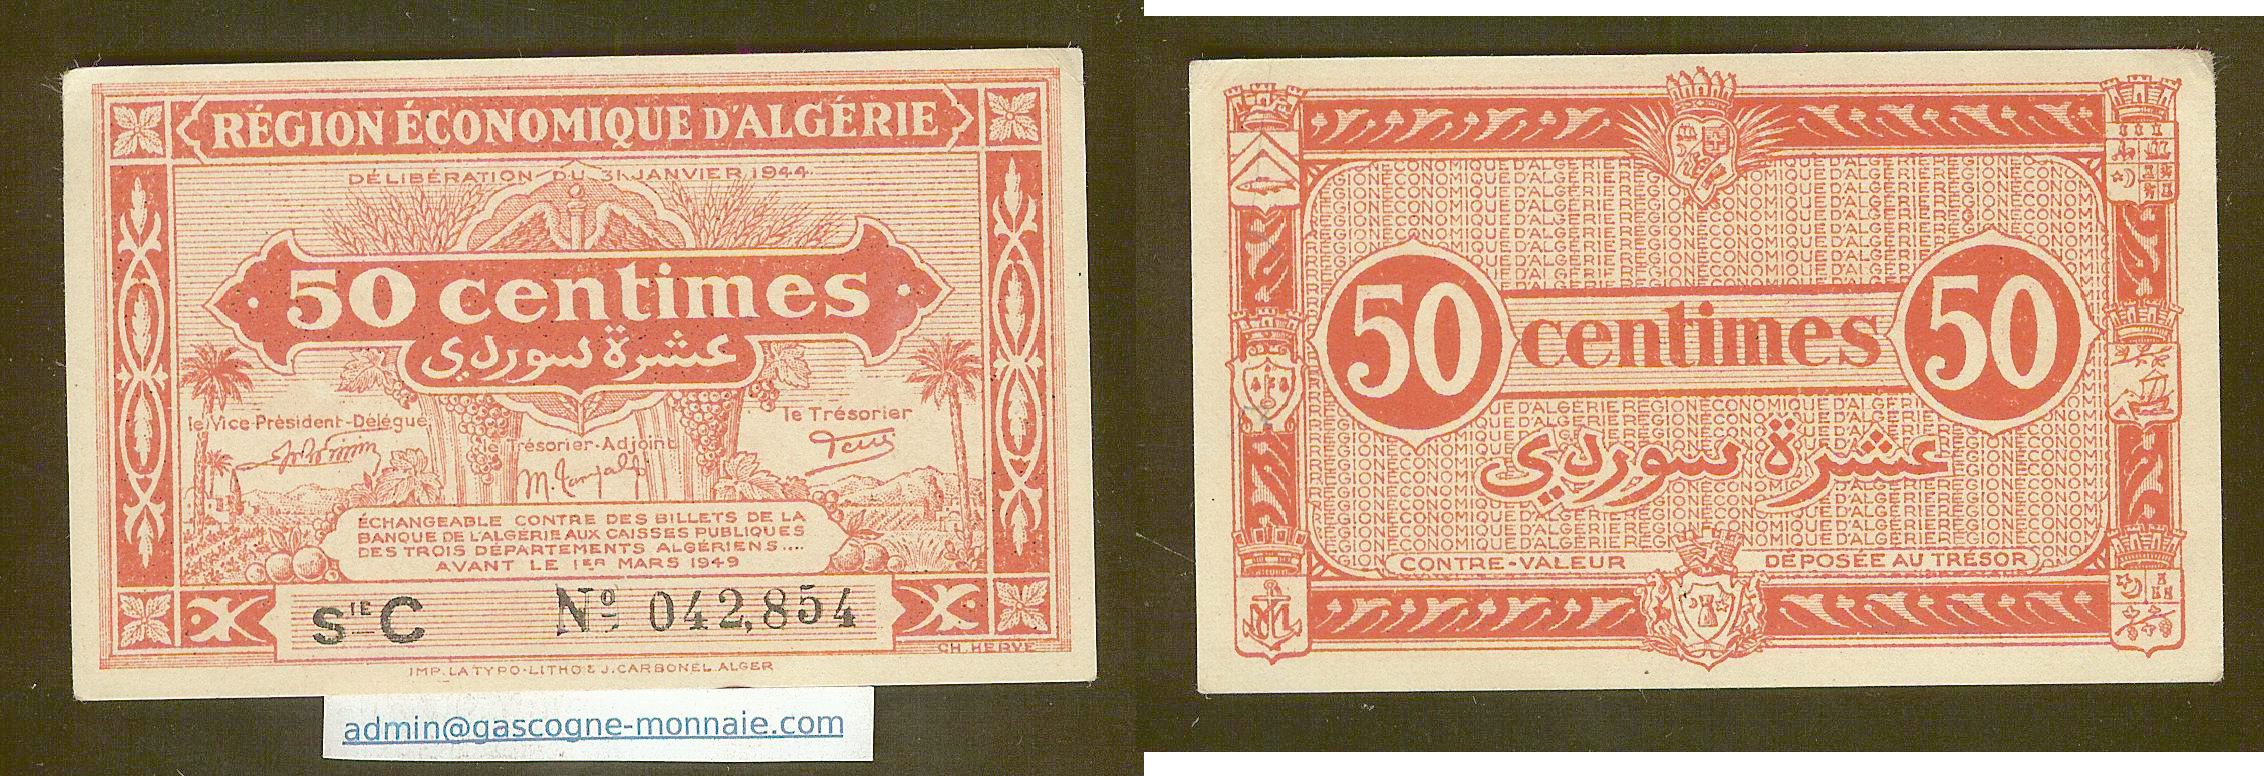 Algeria 50 centimes 31.1.1944 gEF